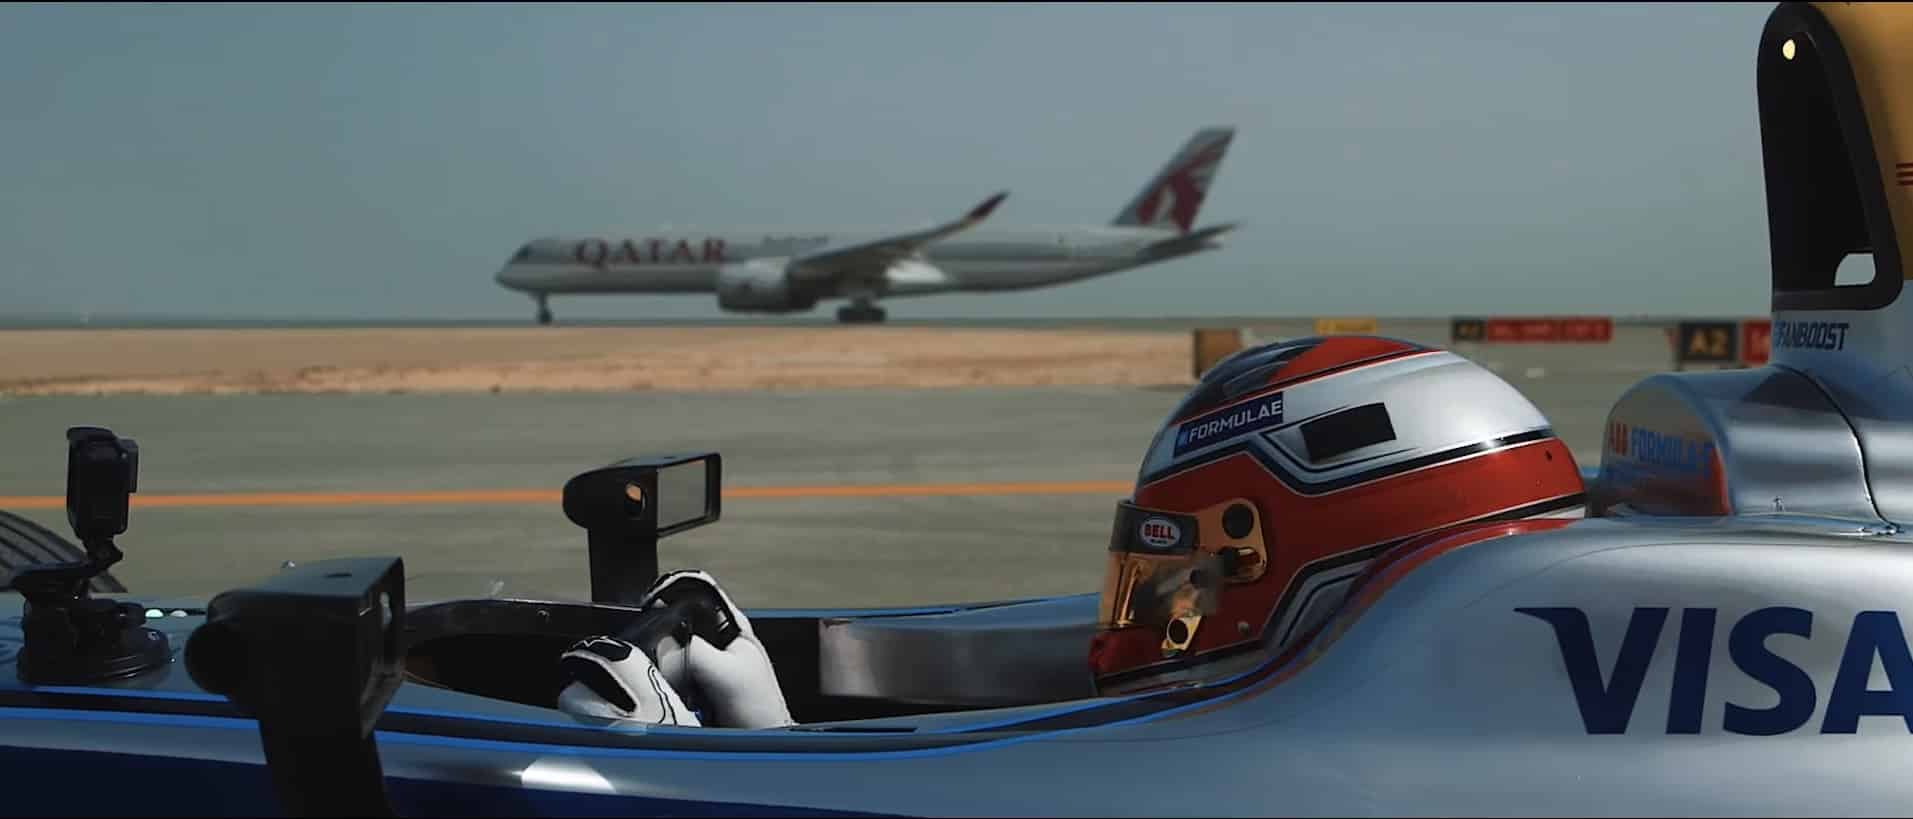 comenzar la carrera Fórmula-e-airbus-a350-Qatar Airways